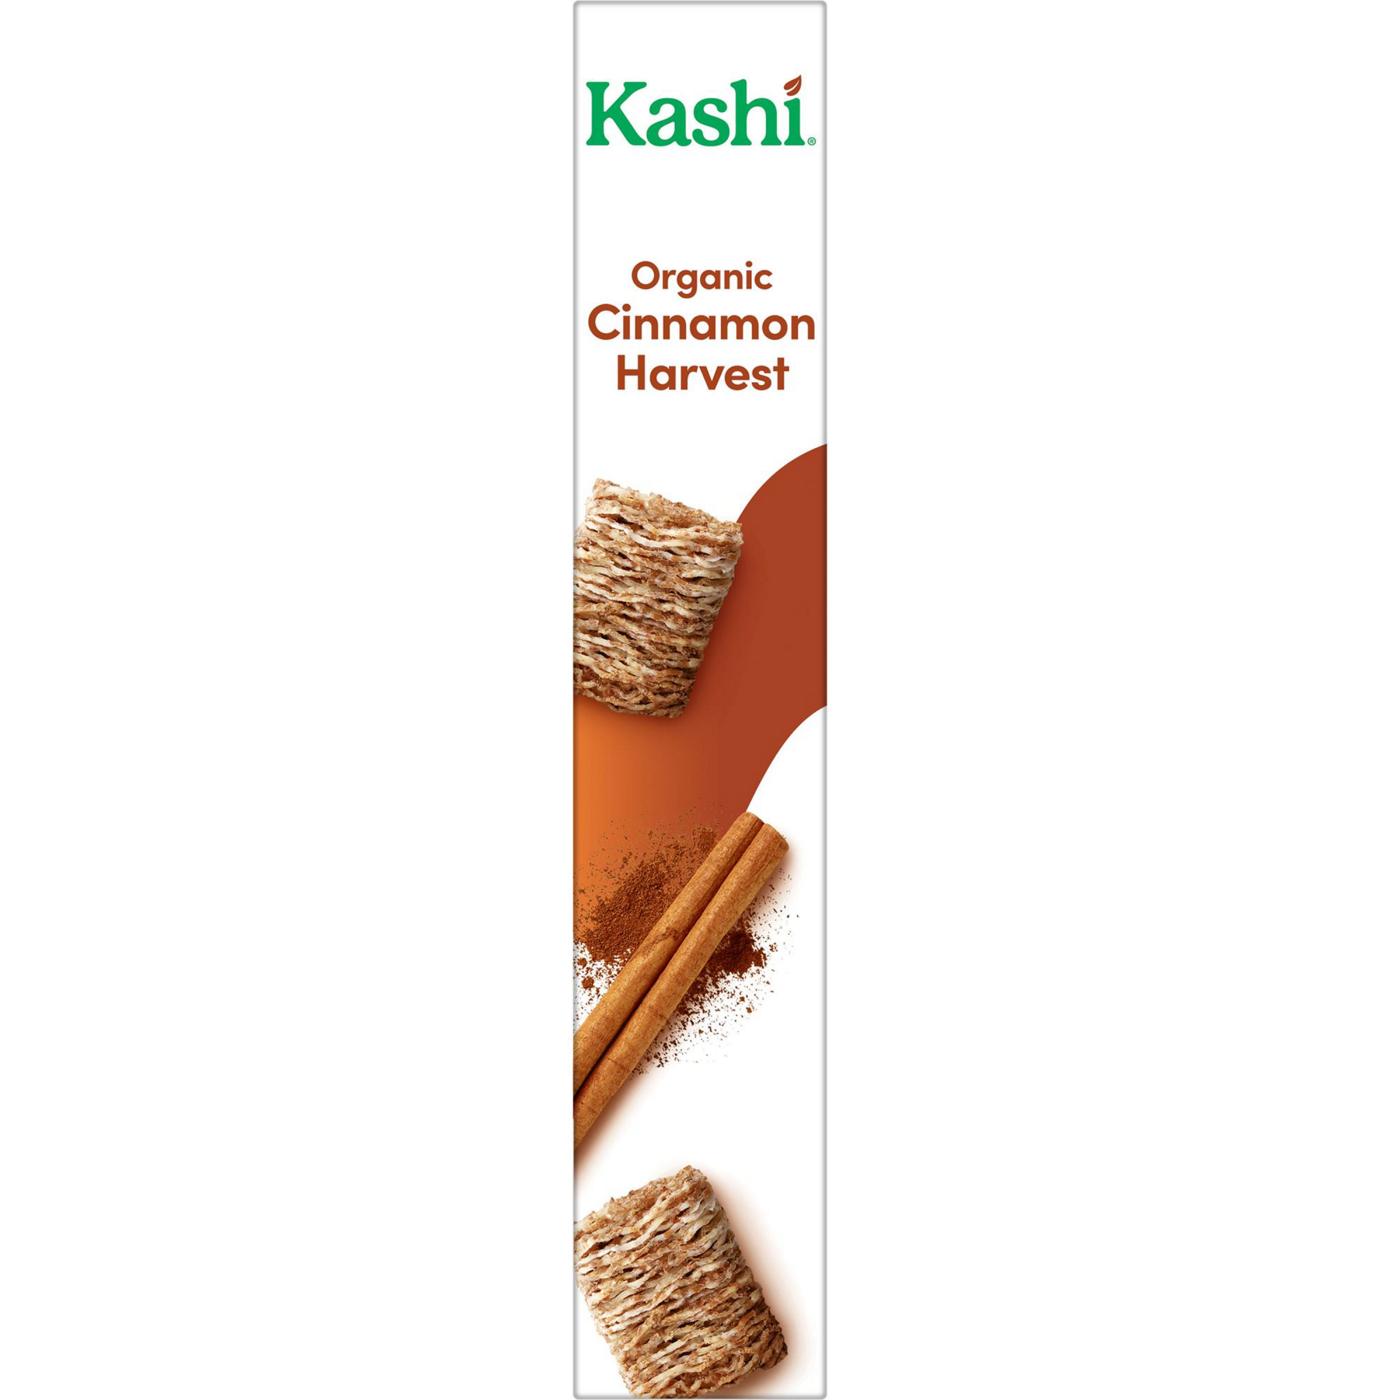 Kashi Cinnamon Harvest Organic Breakfast Cereal; image 6 of 11